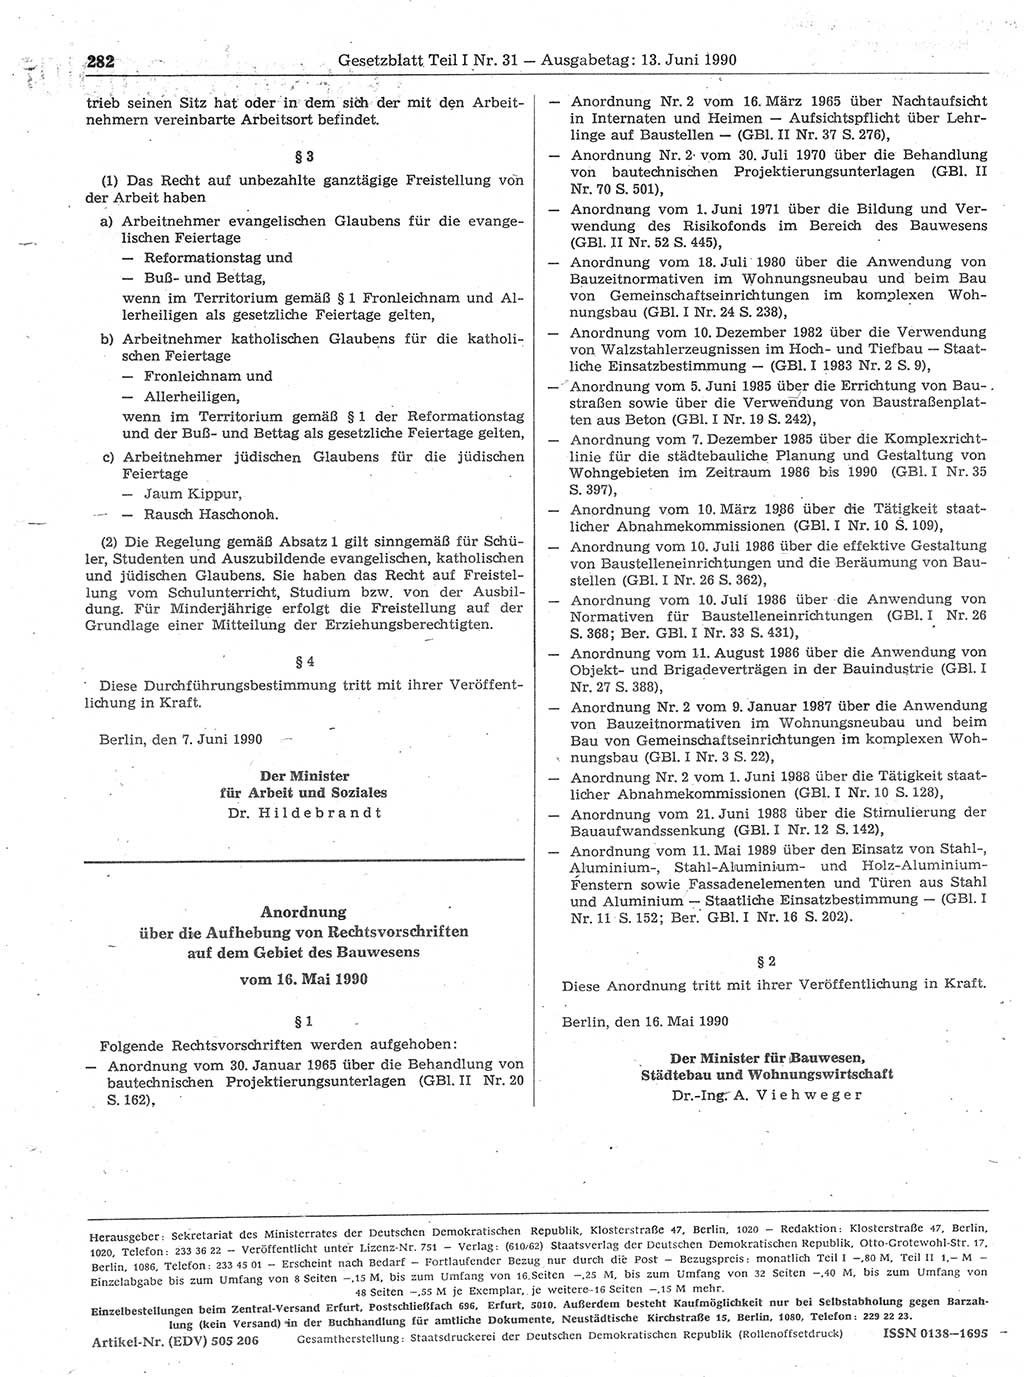 Gesetzblatt (GBl.) der Deutschen Demokratischen Republik (DDR) Teil Ⅰ 1990, Seite 282 (GBl. DDR Ⅰ 1990, S. 282)